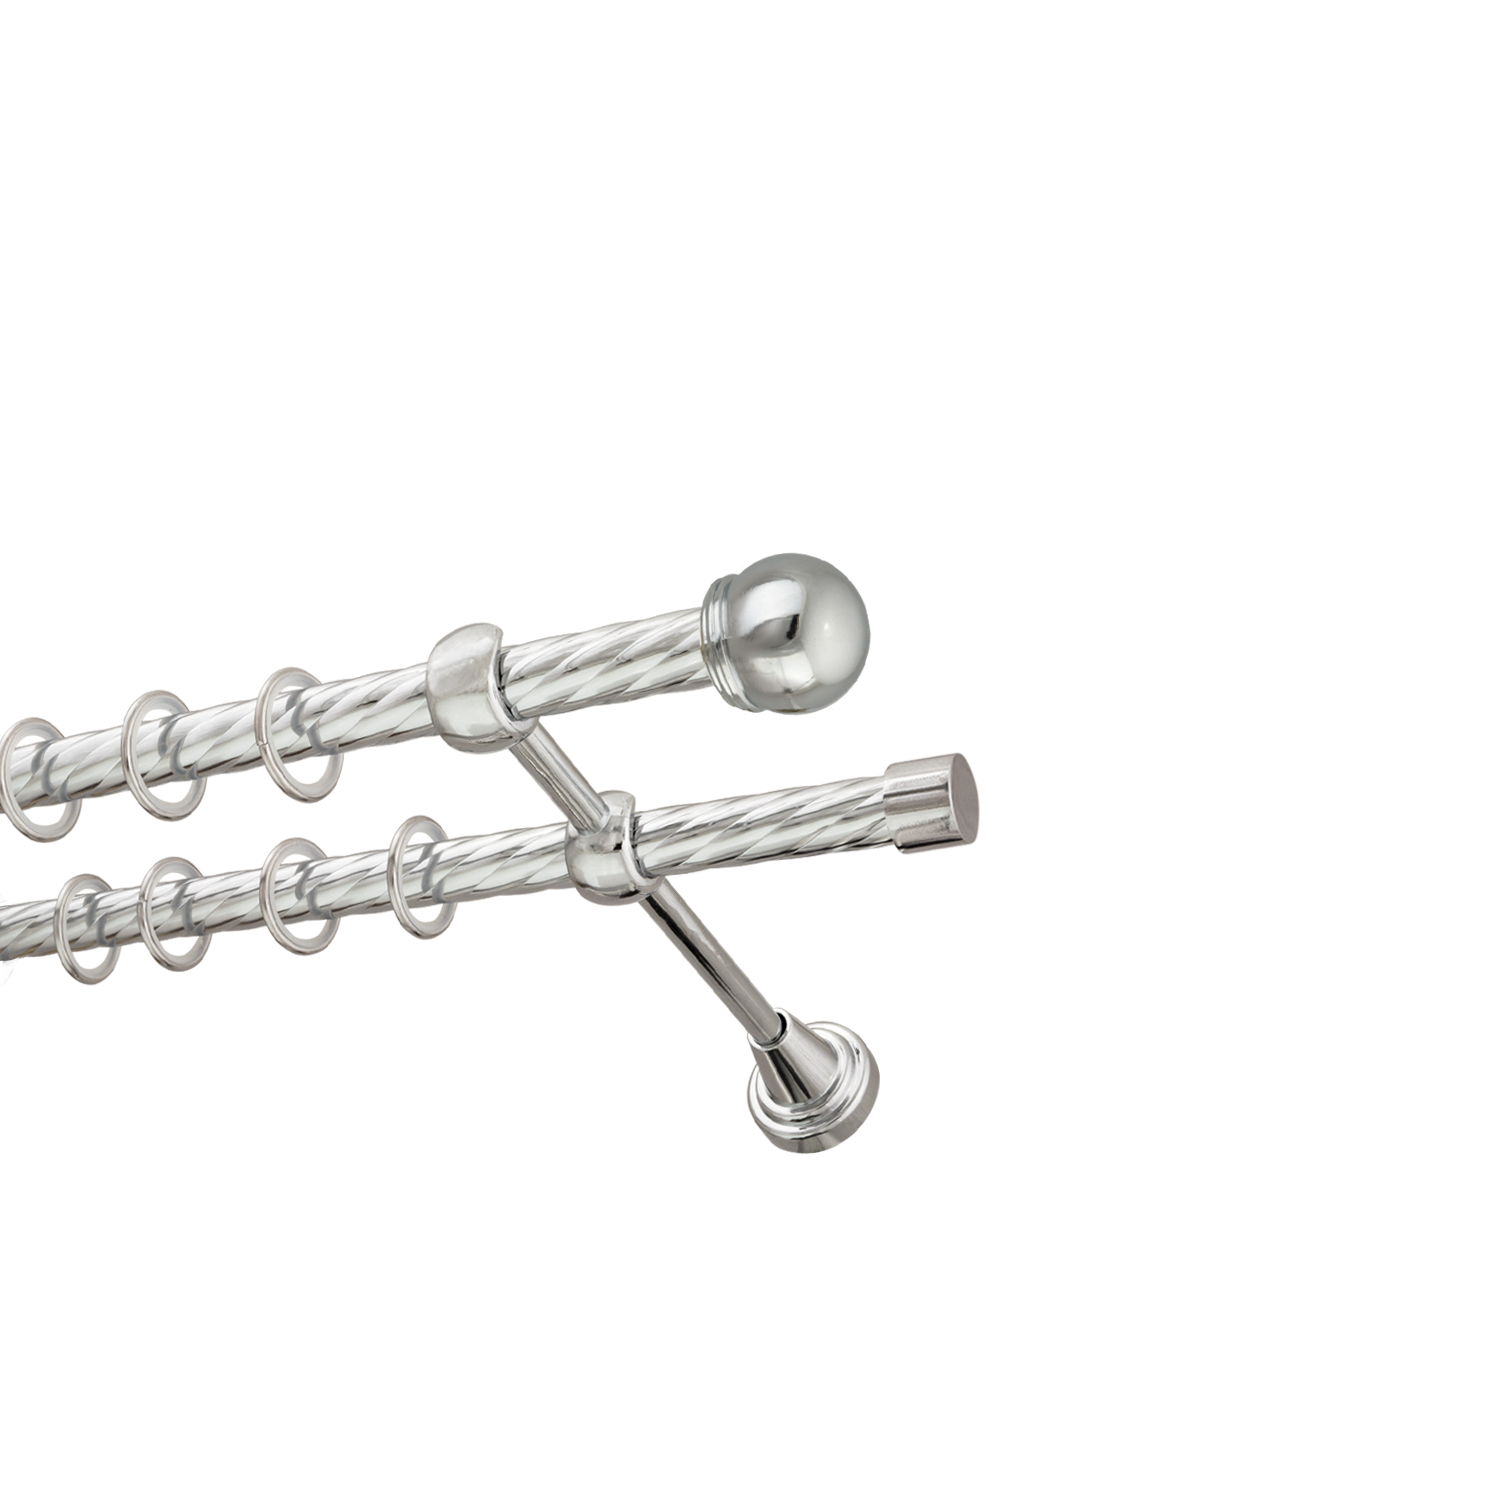 Металлический карниз для штор Вива, двухрядный 16/16 мм, серебро, витая штанга, длина 200 см